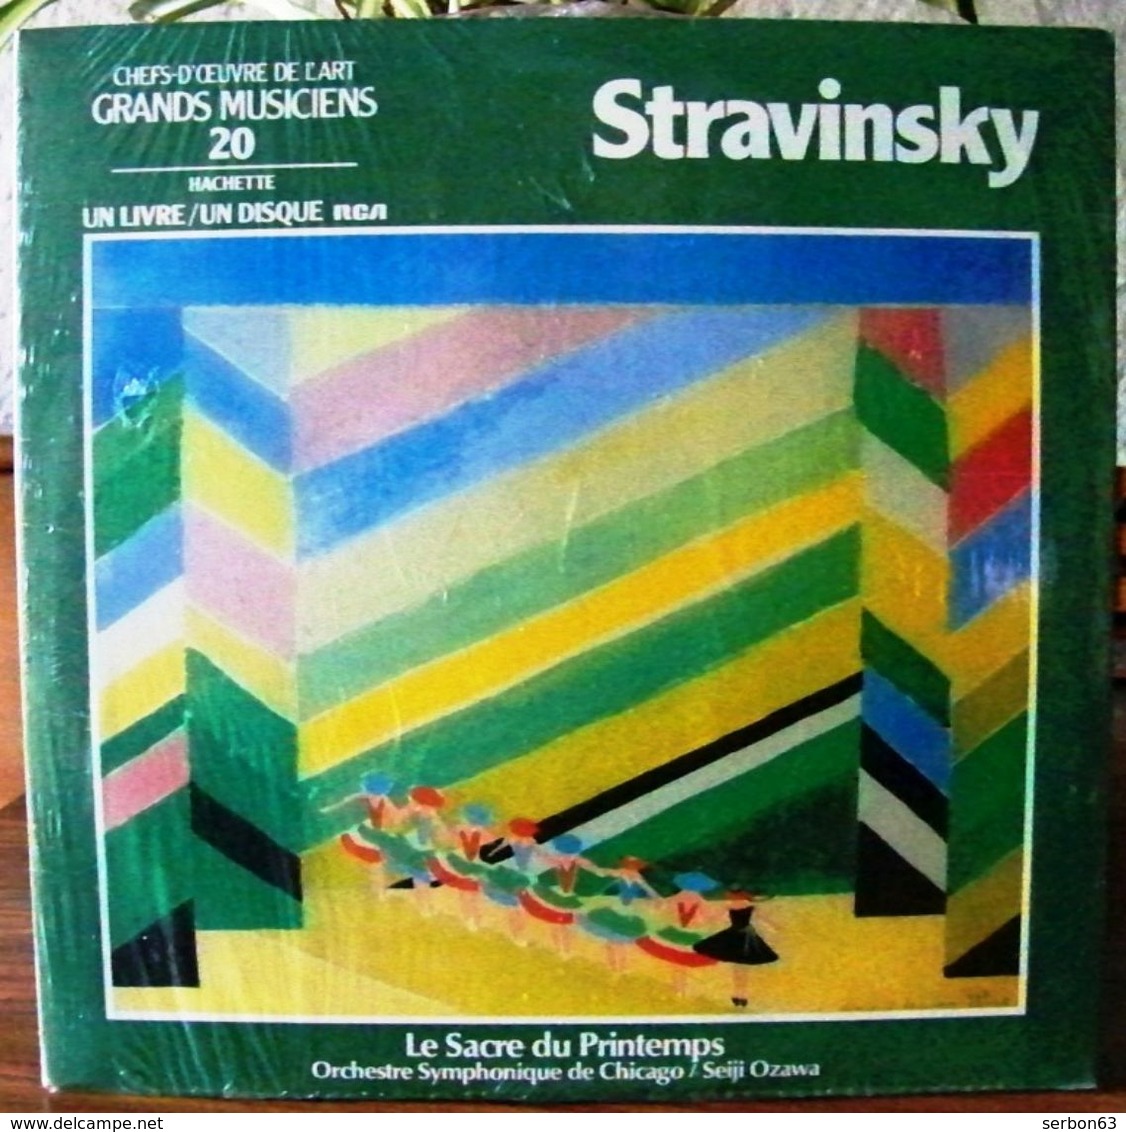 33 TOURS N° 20 VINYLE GRANDS MUSICIENS 1 LIVRE + 1 DISQUE 1990 NEUF STRAVINSKY SOUS PLASTIQUE D'ORIGINE - SITE Serbon63 - Classique